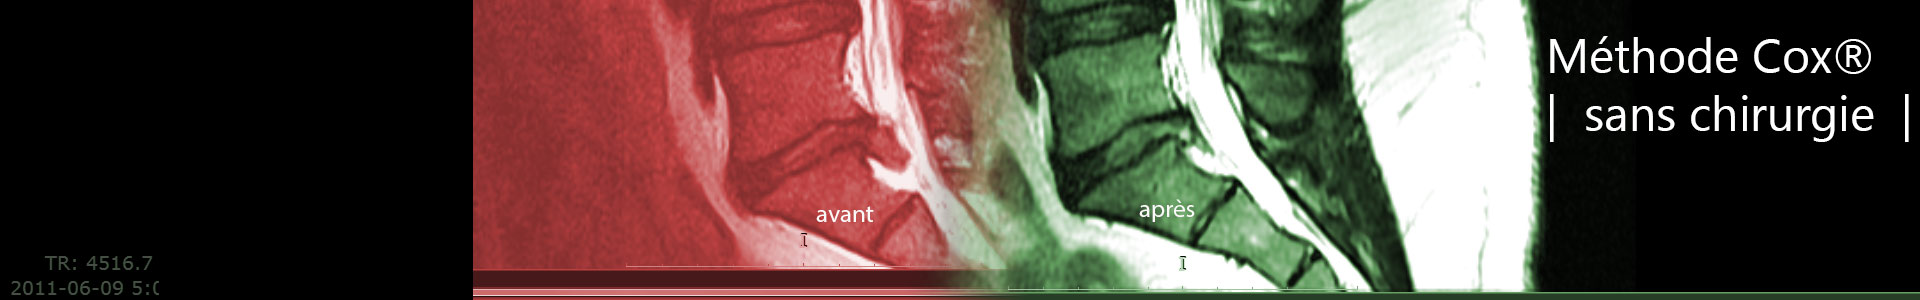 La méthode sans chirurgie Cox pour les traitement de hernie discale, sténose foraminale lombaire.